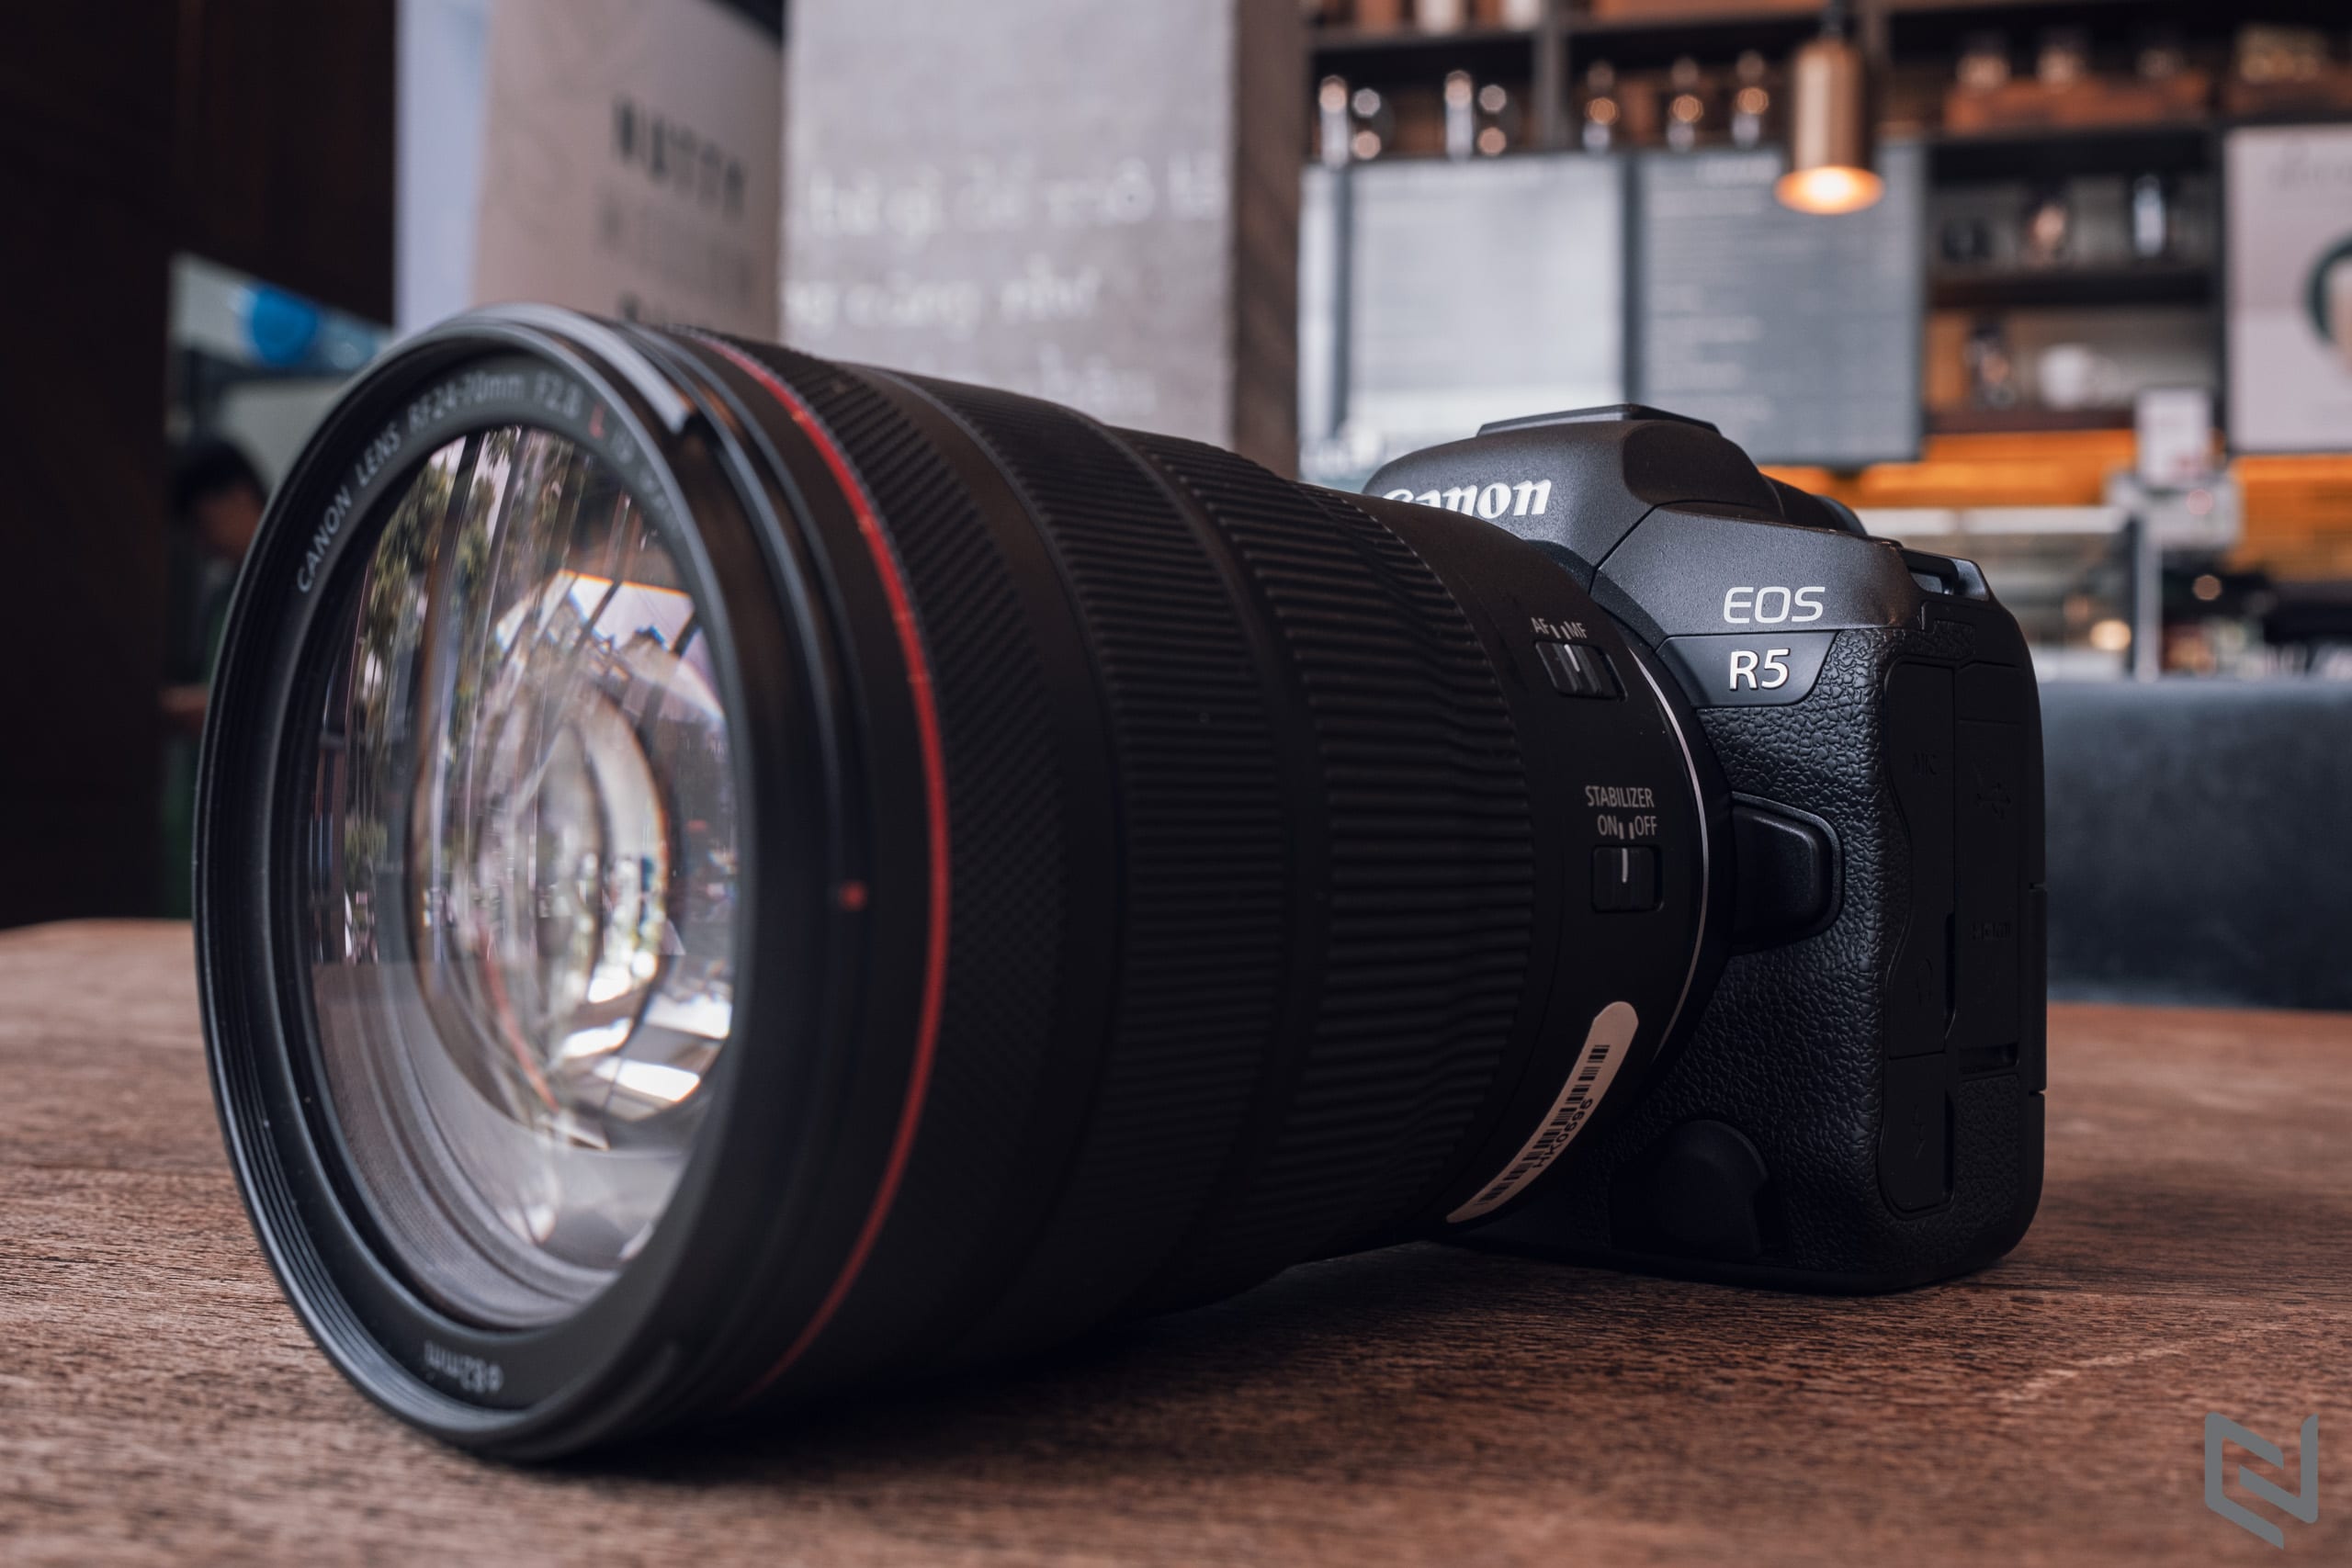 Canon kỉ niệm 20 năm liên tiếp giữ vị trí số 1 thị trường máy ảnh SLR và không gương lật